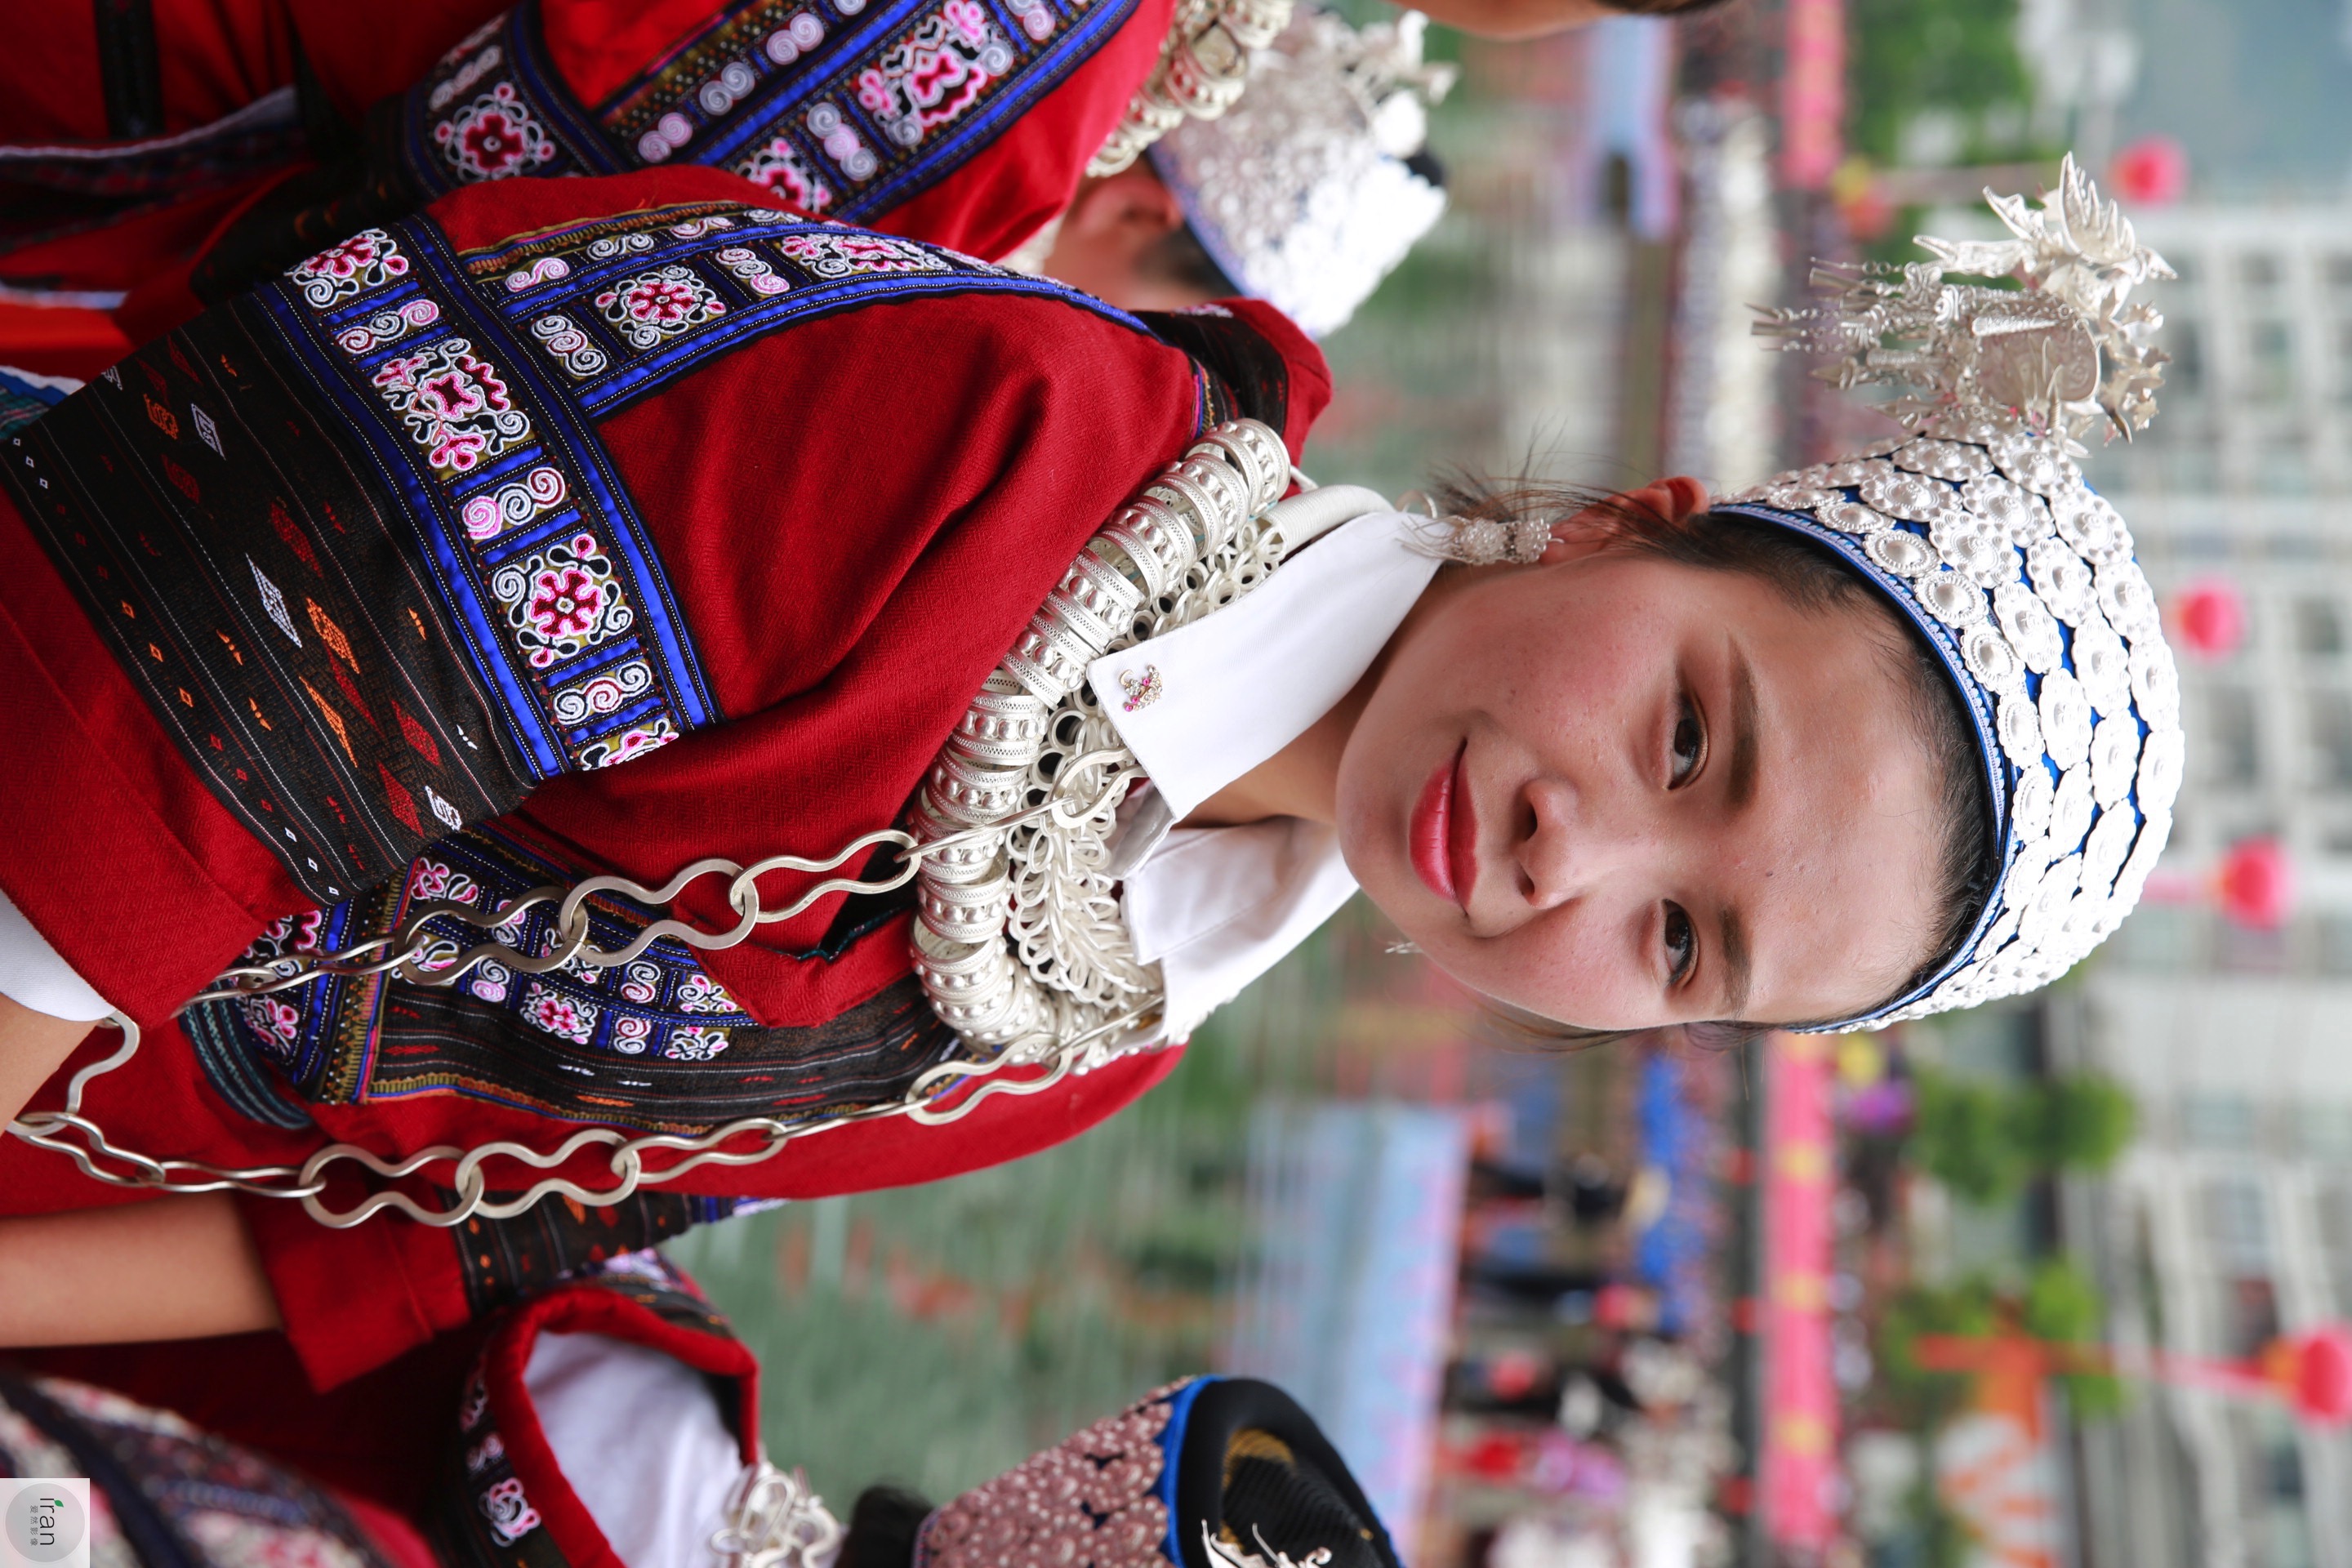 台江苗族支系众多,服饰上也各有特色,苗族服饰被称为穿在身上的苗族